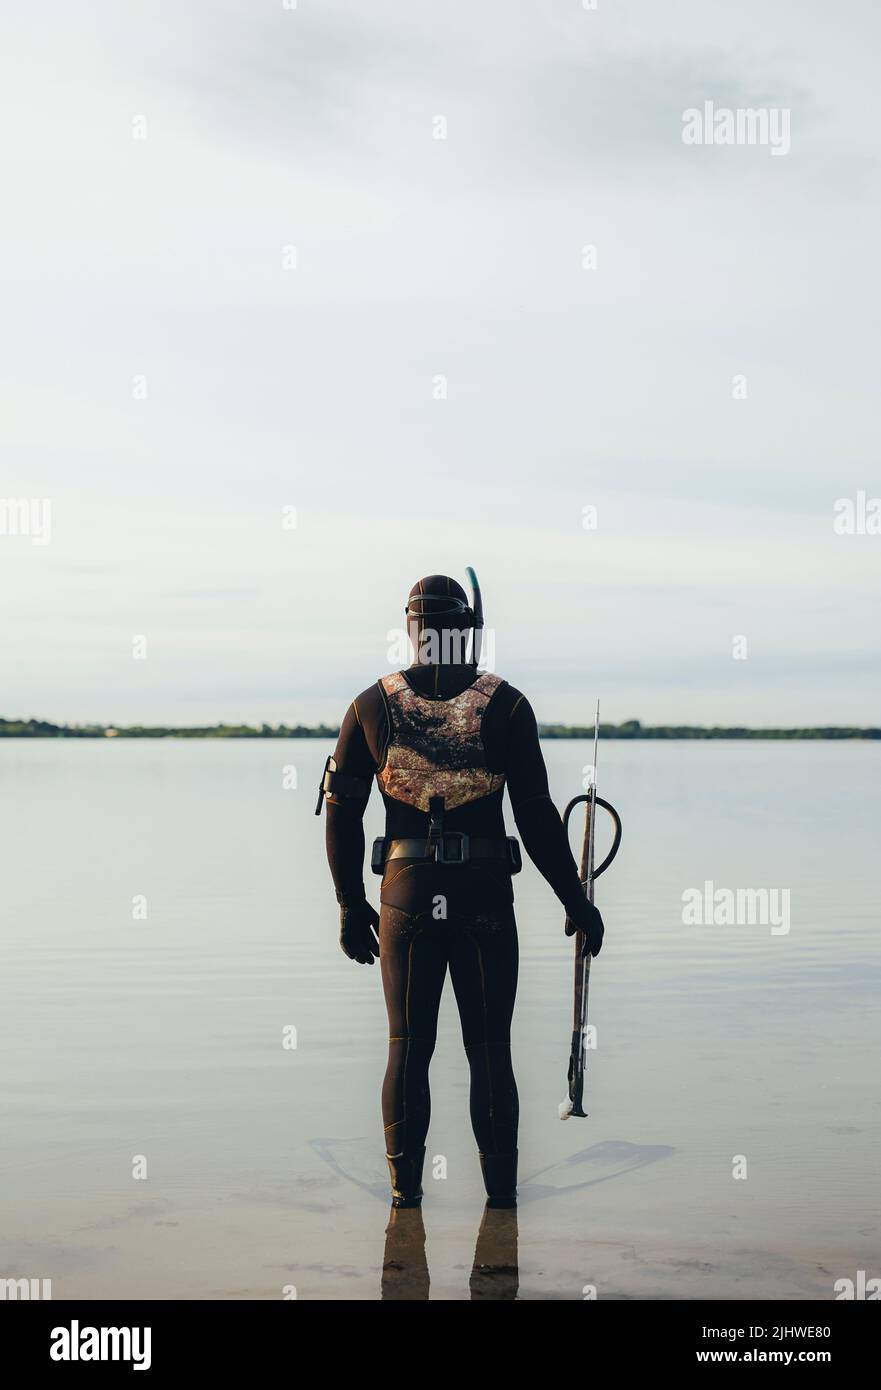 Mann, der eine Pistole in der Hand hält und im Meerwasser steht. Rückansicht eines Mannes in einem Neoprenanzug, der sich bereit gemacht hat, unter dem Wasser zu Speerfischen. Stockfoto